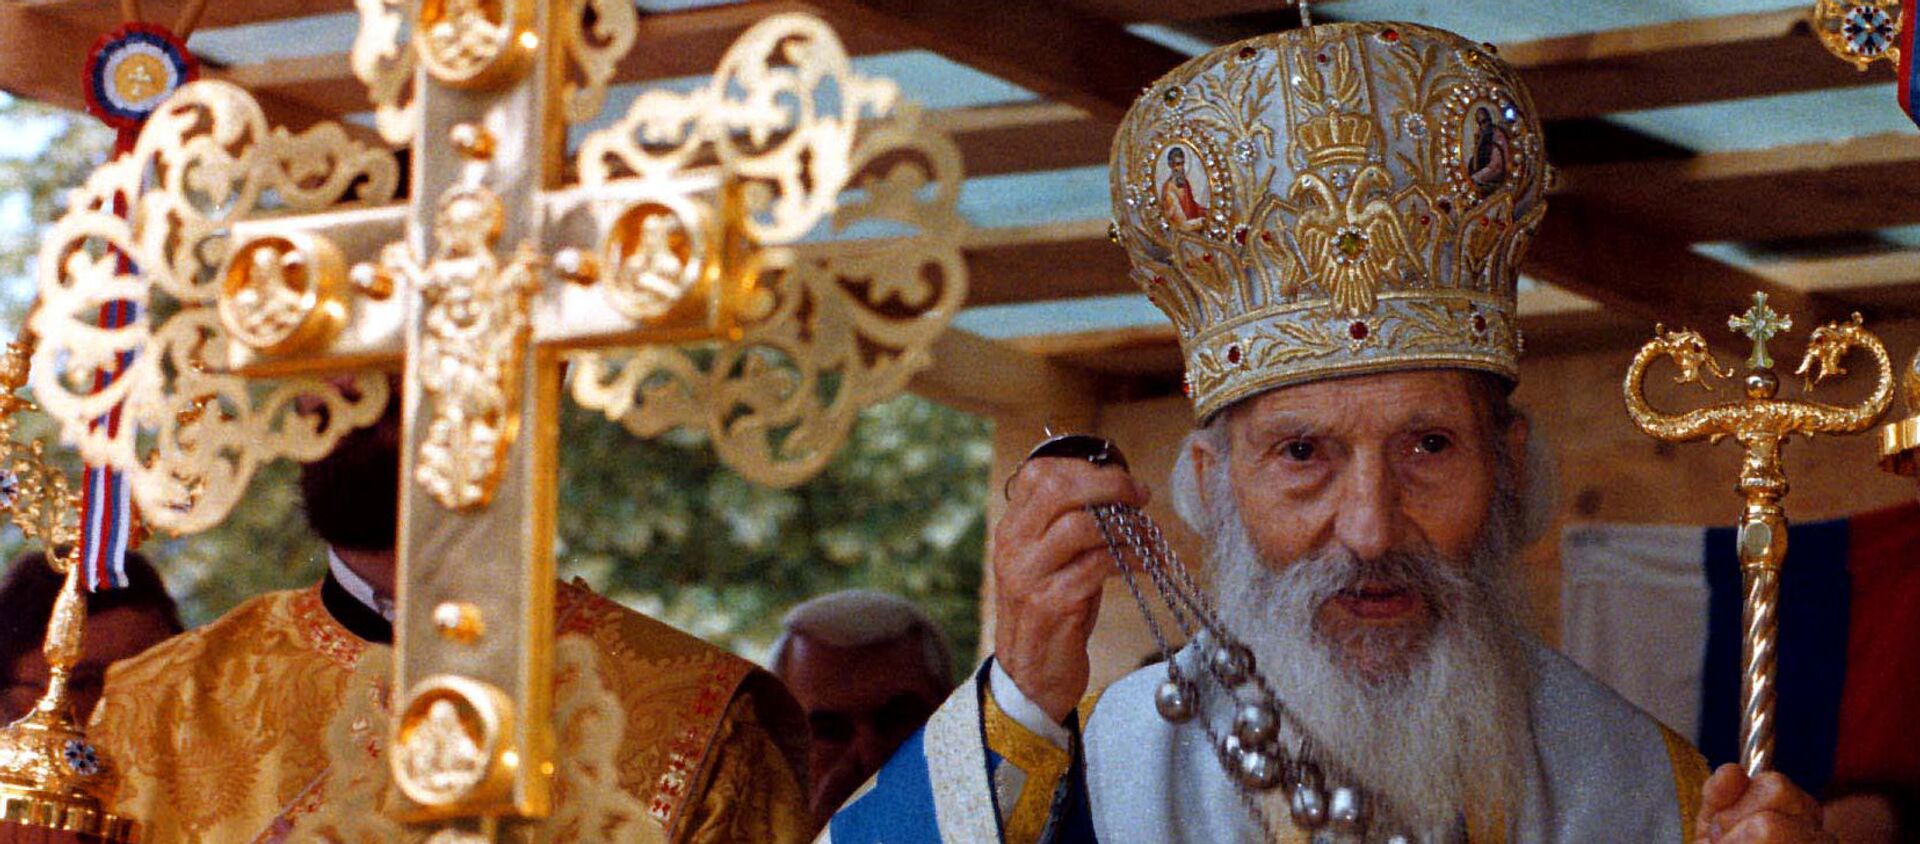 Patrijarh Pavle, poglavar Srpske pravoslavne crkve,16. maja 2008. godine - Sputnik Srbija, 1920, 15.11.2020